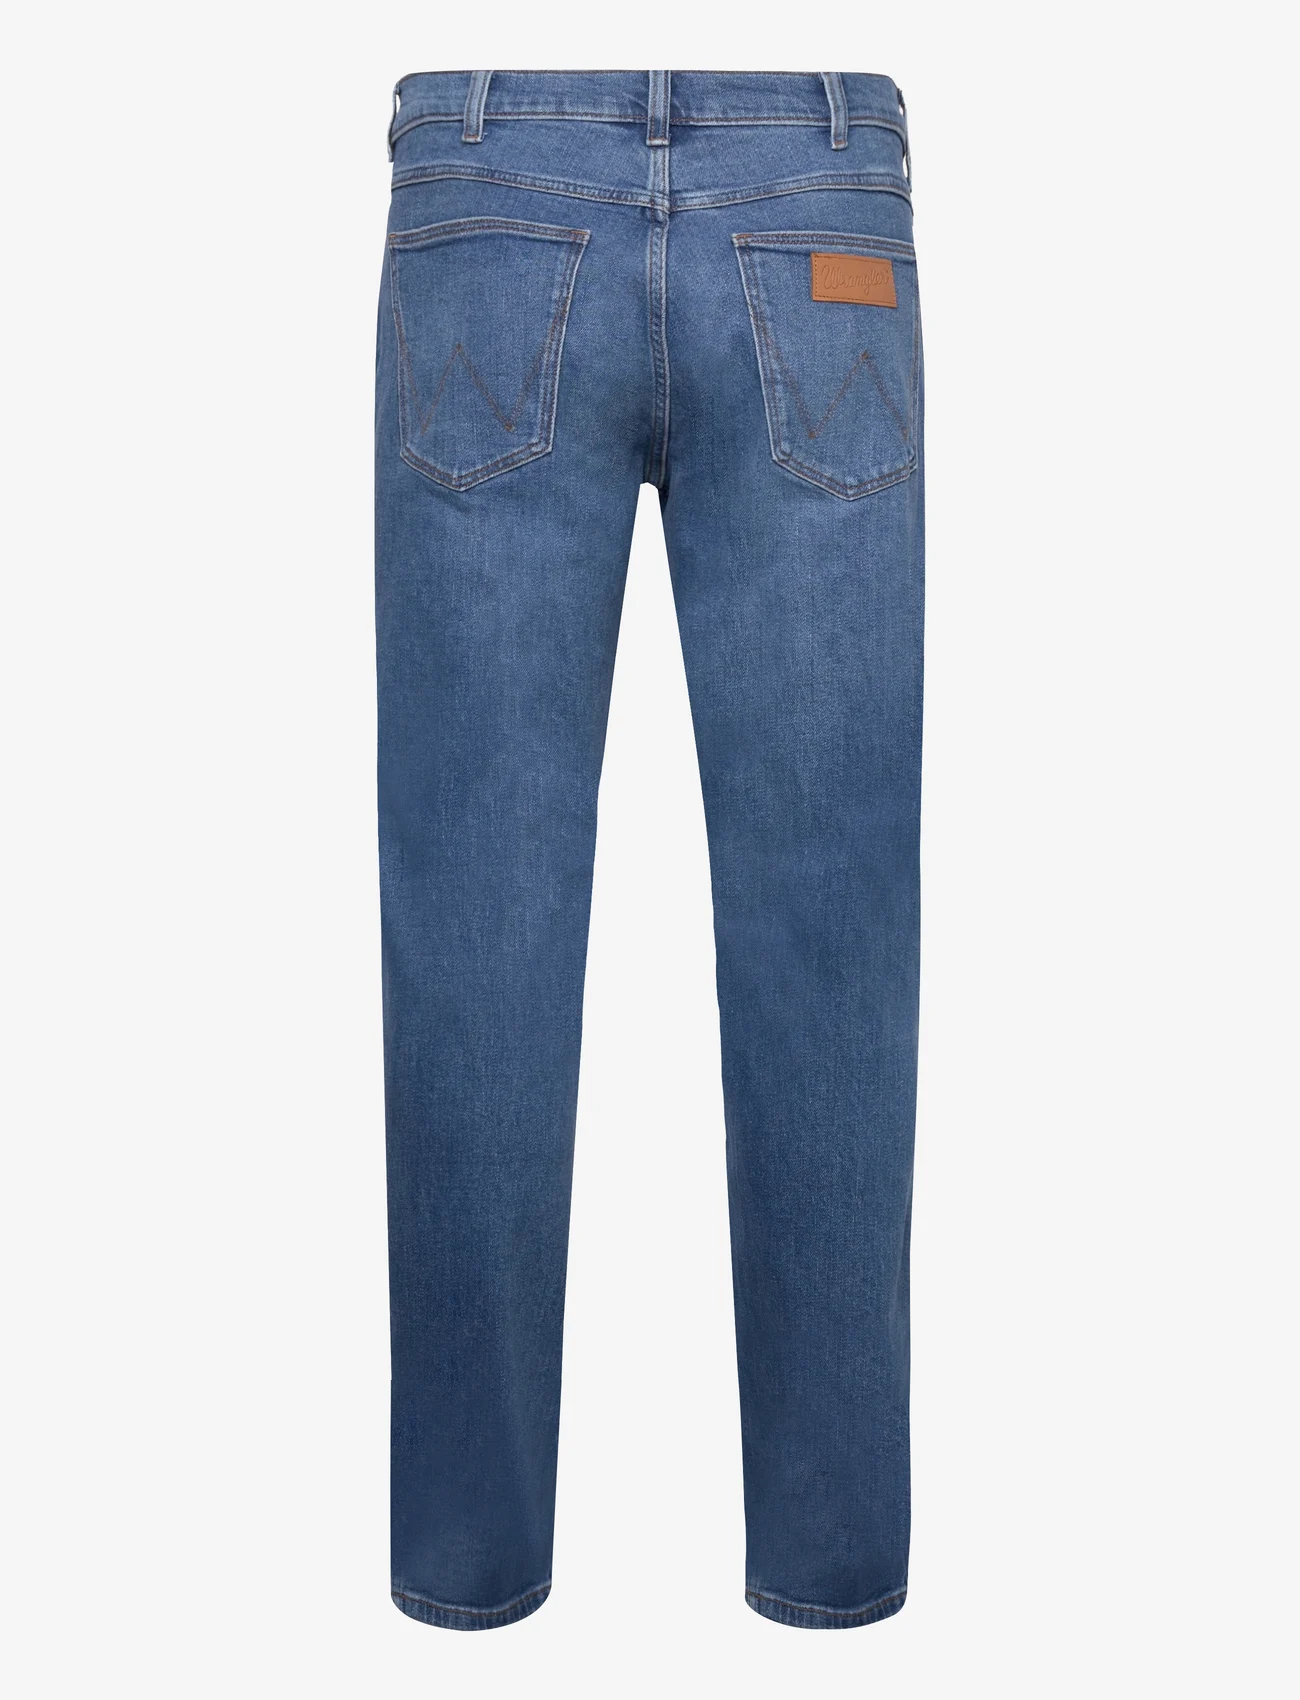 Wrangler - GREENSBORO - regular jeans - new favorite - 1